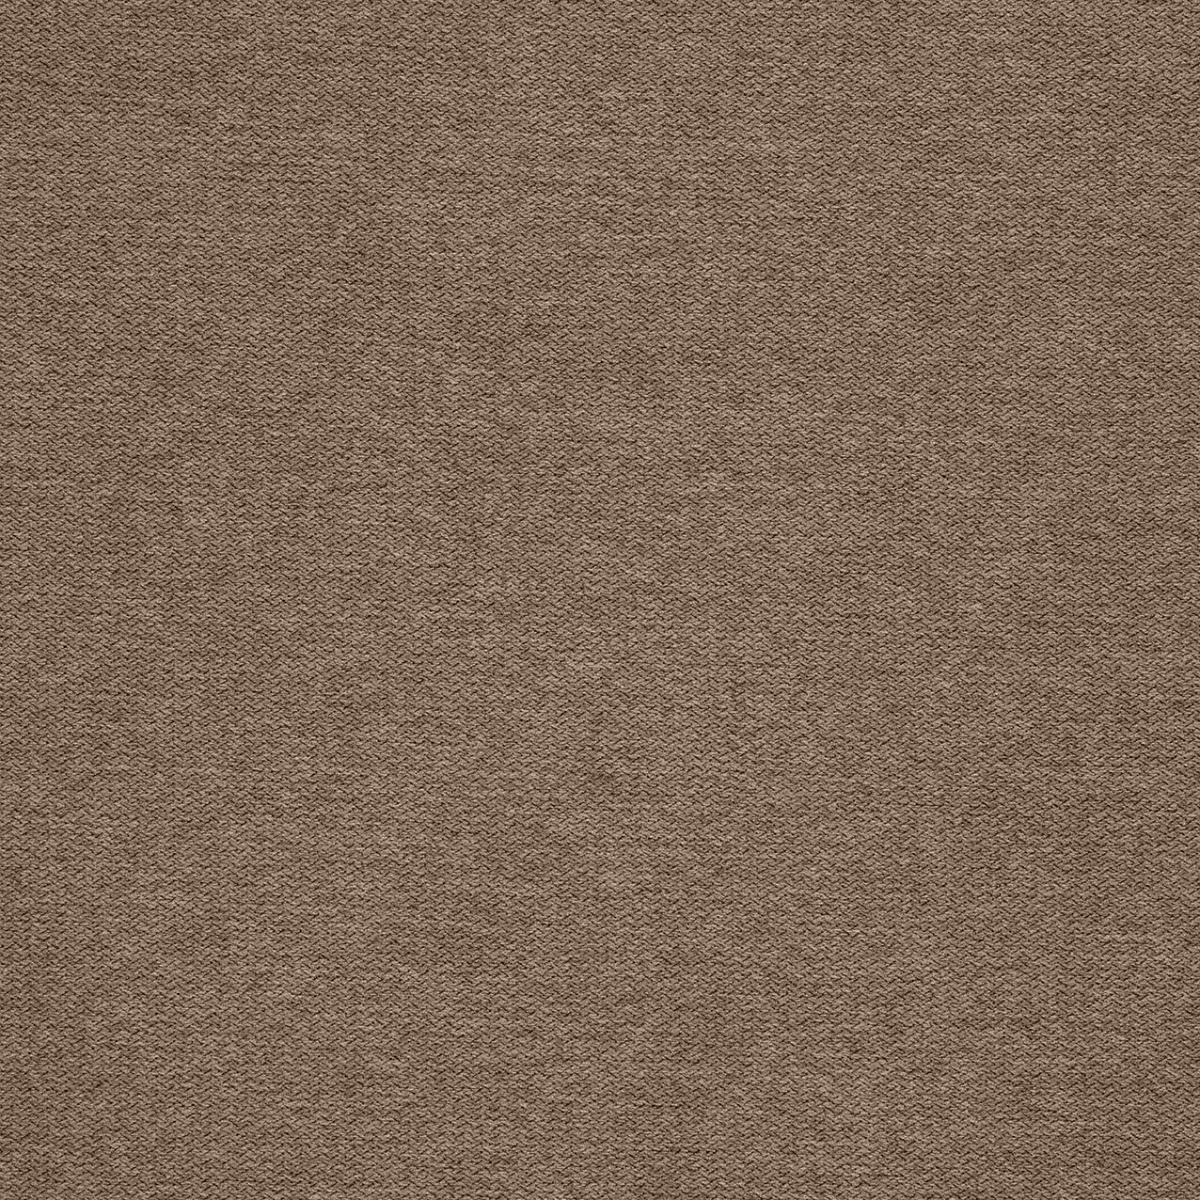  Портьерная ткань MONO CAPPUCCINO, ширина 277 см  - Фото